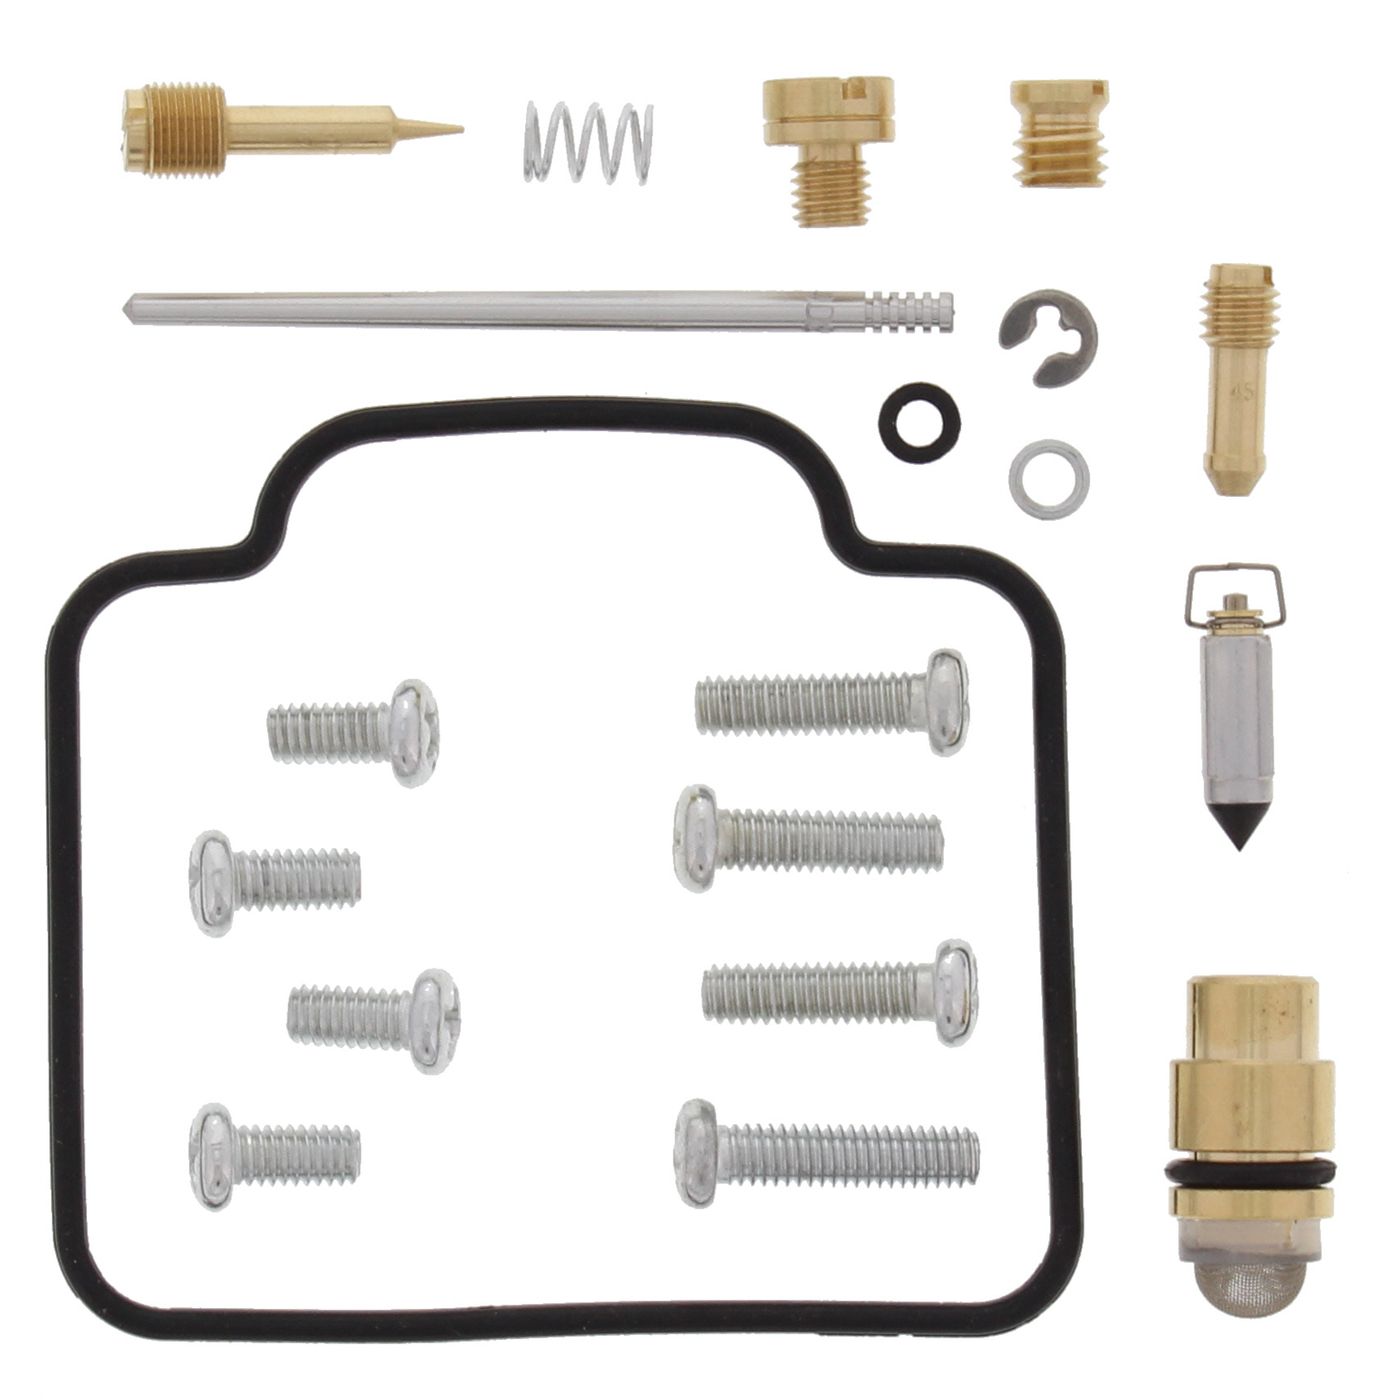 Wrp Carb Repair Kits - WRP261086 image